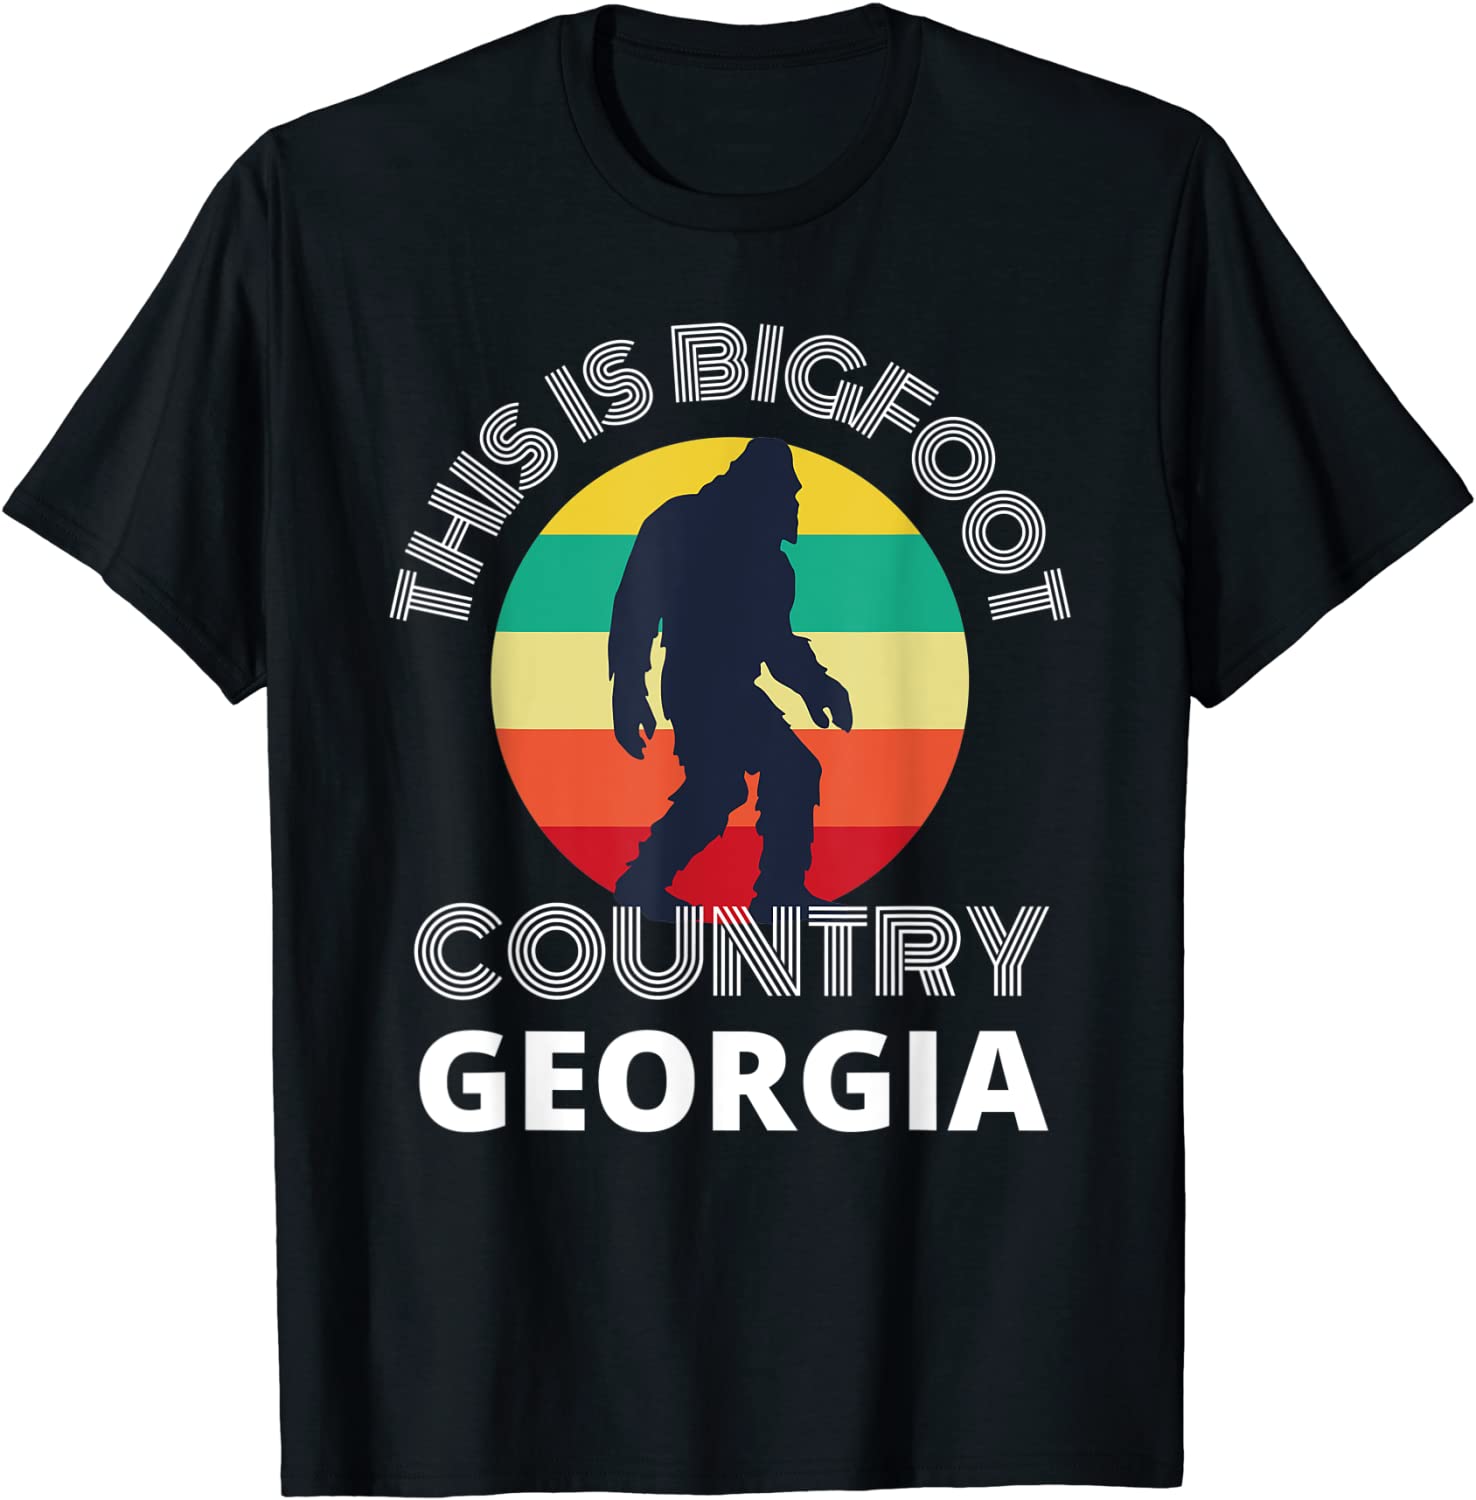 This Is Bigfoot Country Georgia tshirt